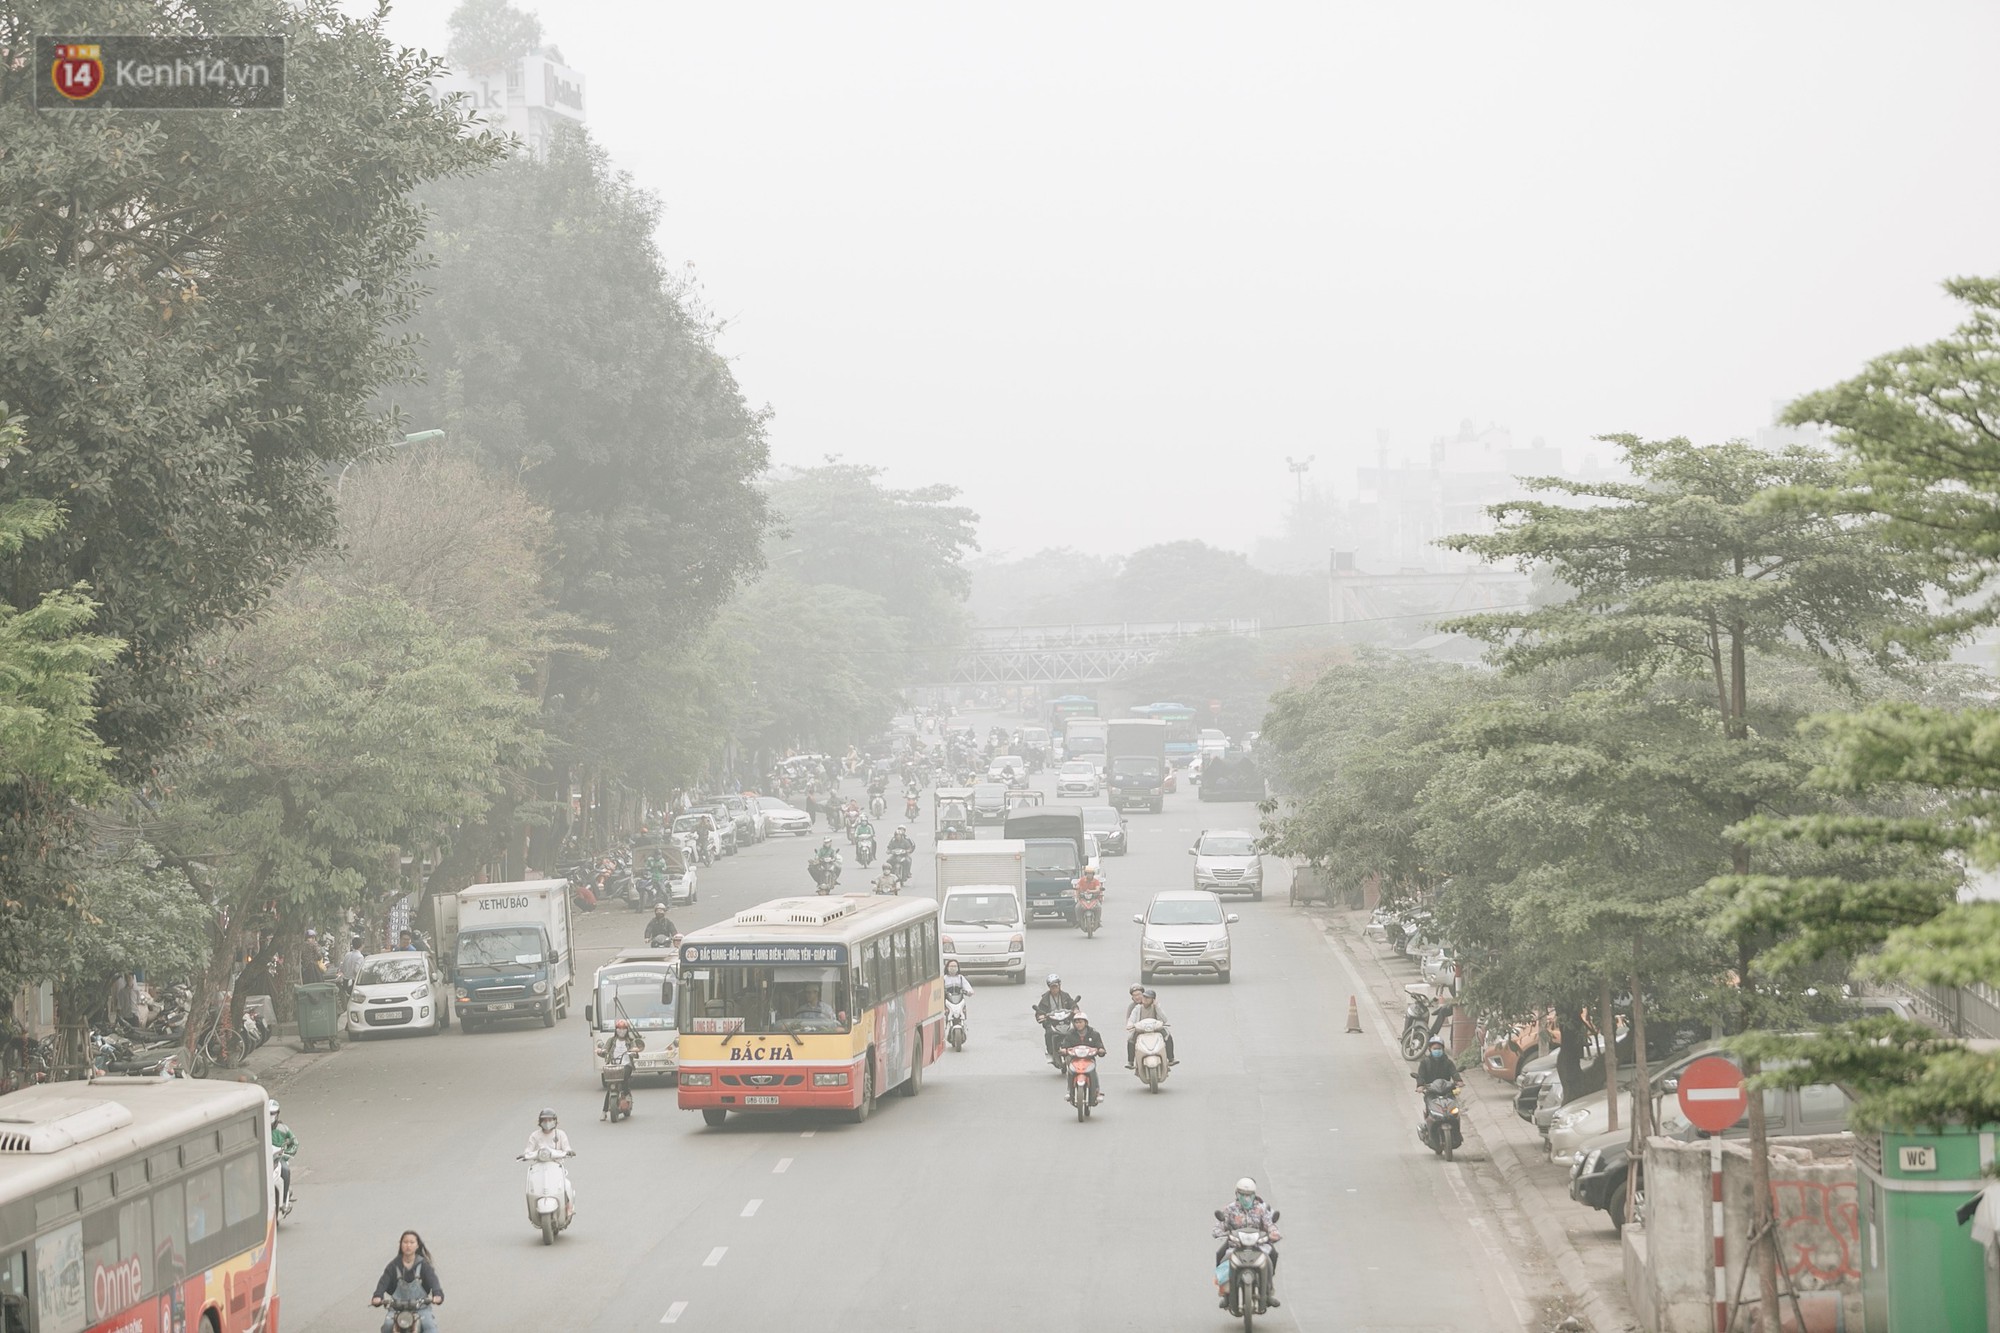 Hà Nội ngập trong sương bụi mù mịt bao phủ tầm nhìn: Tình trạng ô nhiễm không khí đáng báo động! - Ảnh 5.